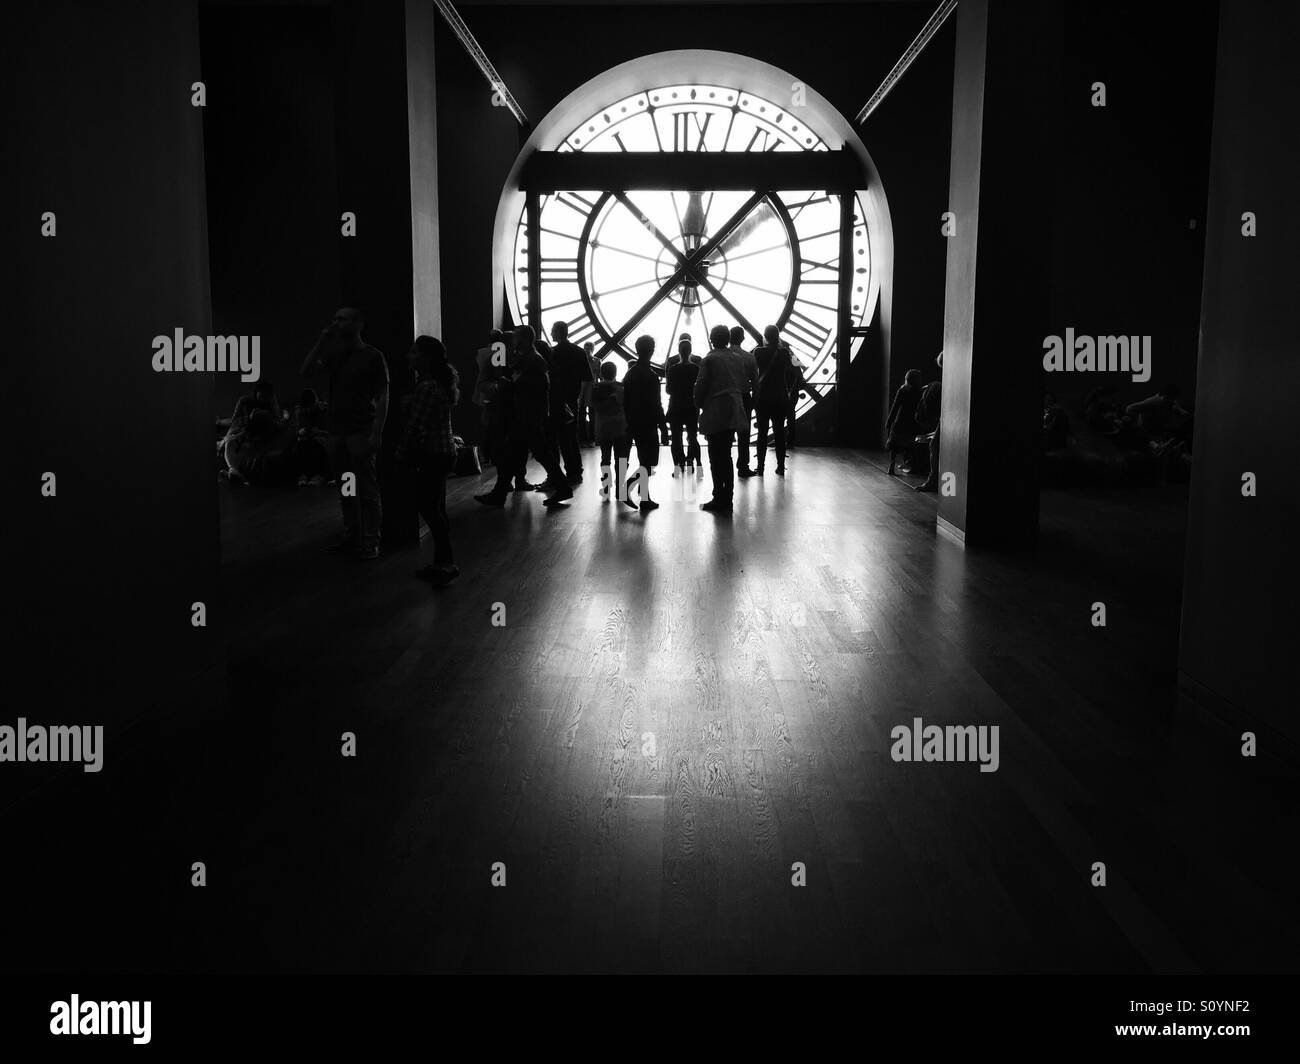 Il famoso orologio interno del Musee d'Orsay a Parigi in Francia con una folla di fronte ad esso. Foto Stock